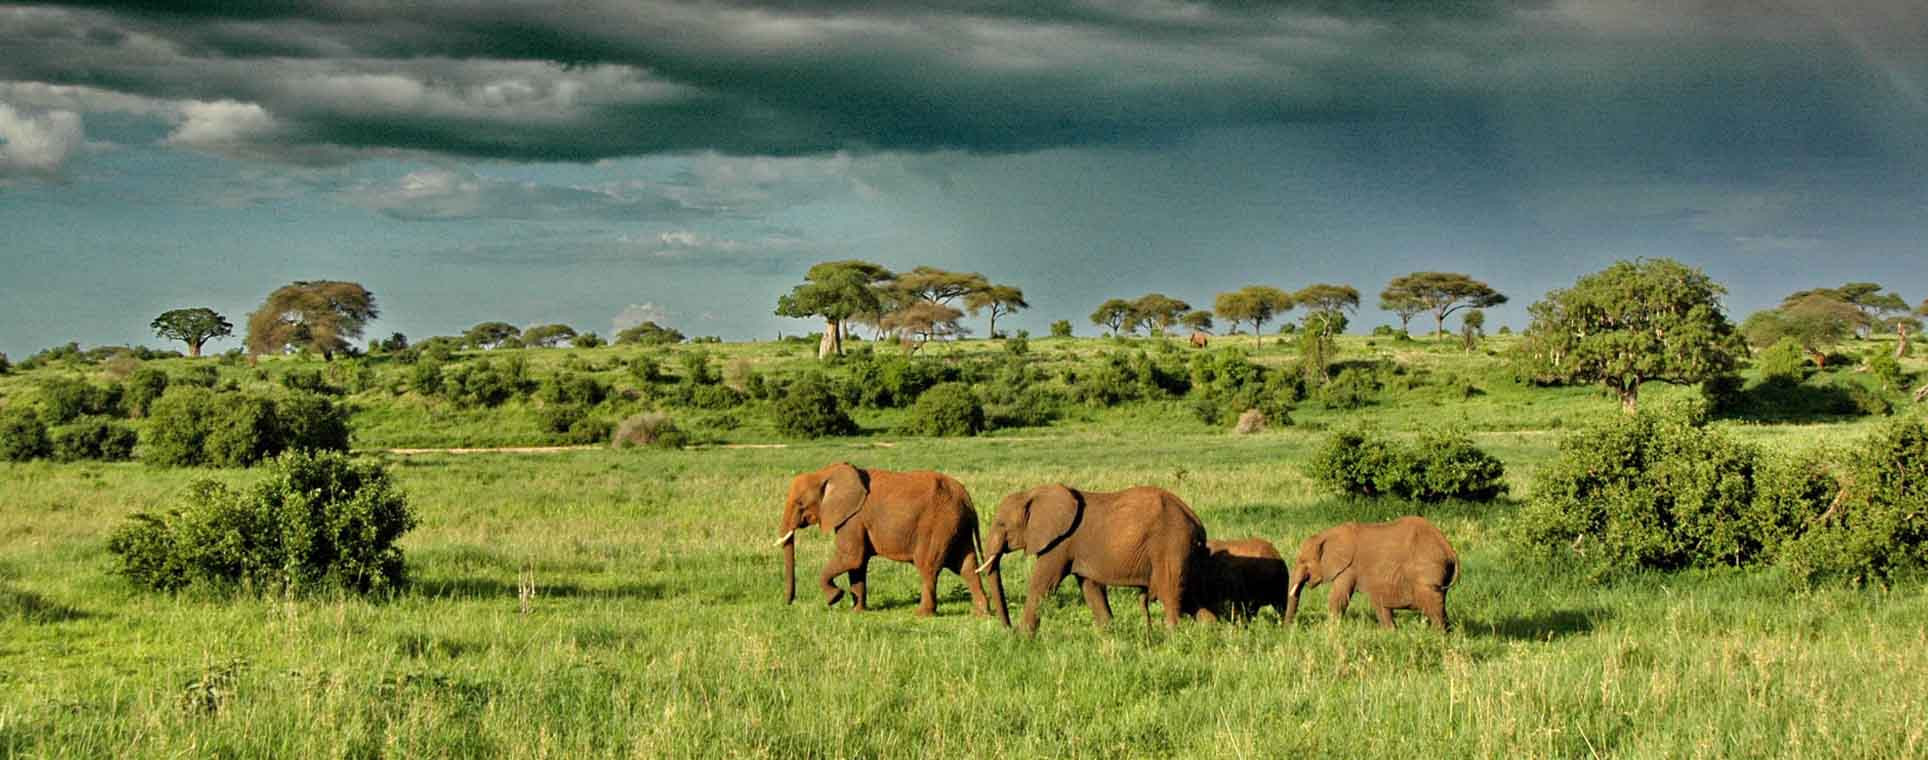 Tanzania Safari Tour 7 Days